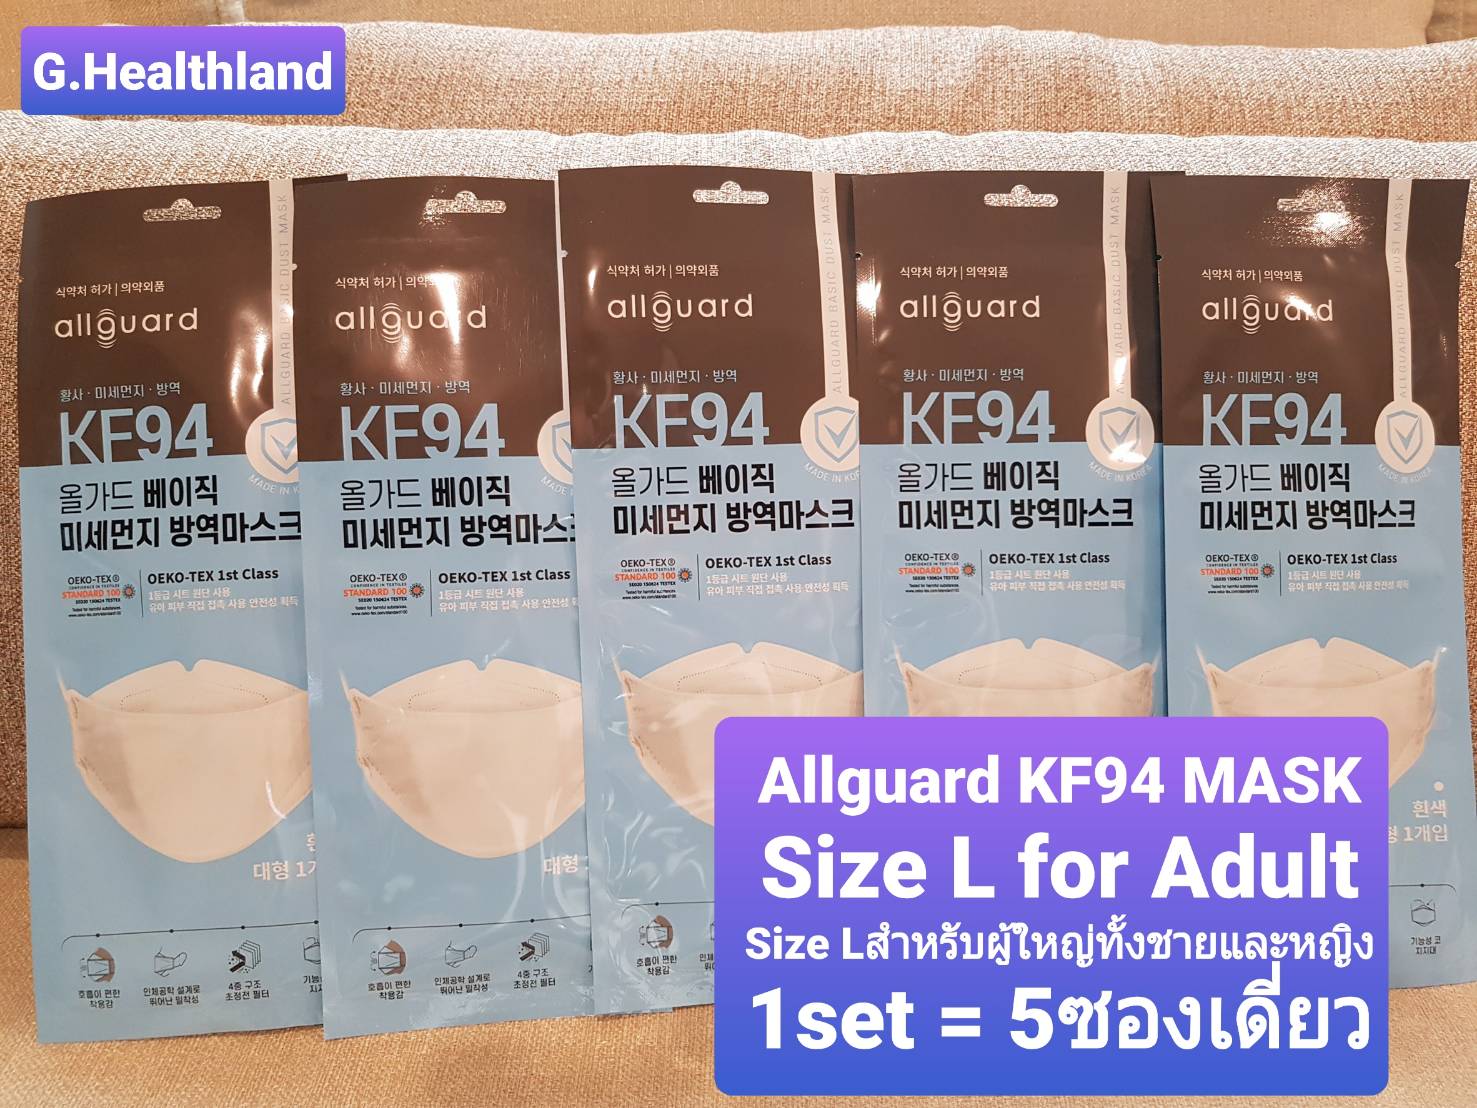 Size L แพ็คเกจ 1เซ็ท=5 ซองเดี่ยว หน้ากากอนามัย แมส MASK KF94 แบรนด์ Allguard นำเข้าจากประเทศเกาหลี?? ป้องกันฝุ่นละออง PM2.5 ป้องกันเชื้อไวรัส